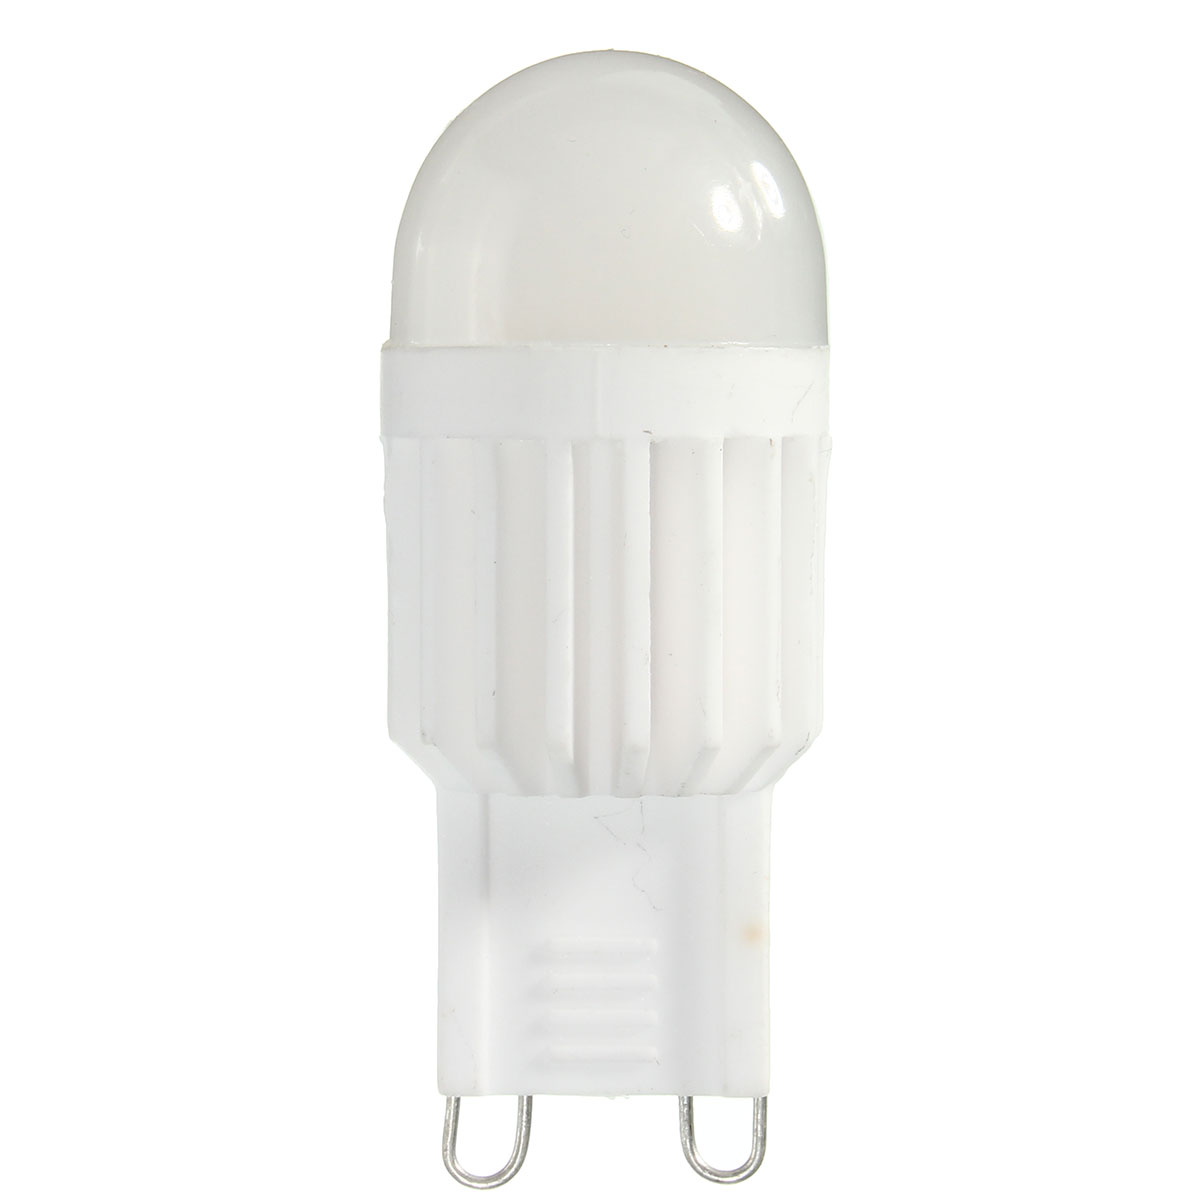 Dimmable-G9-25W-230Lm-Ceramics-LED-COB-Warm-White-Natural-White-Light-Lamp-Bulb-AC110V220V-1058526